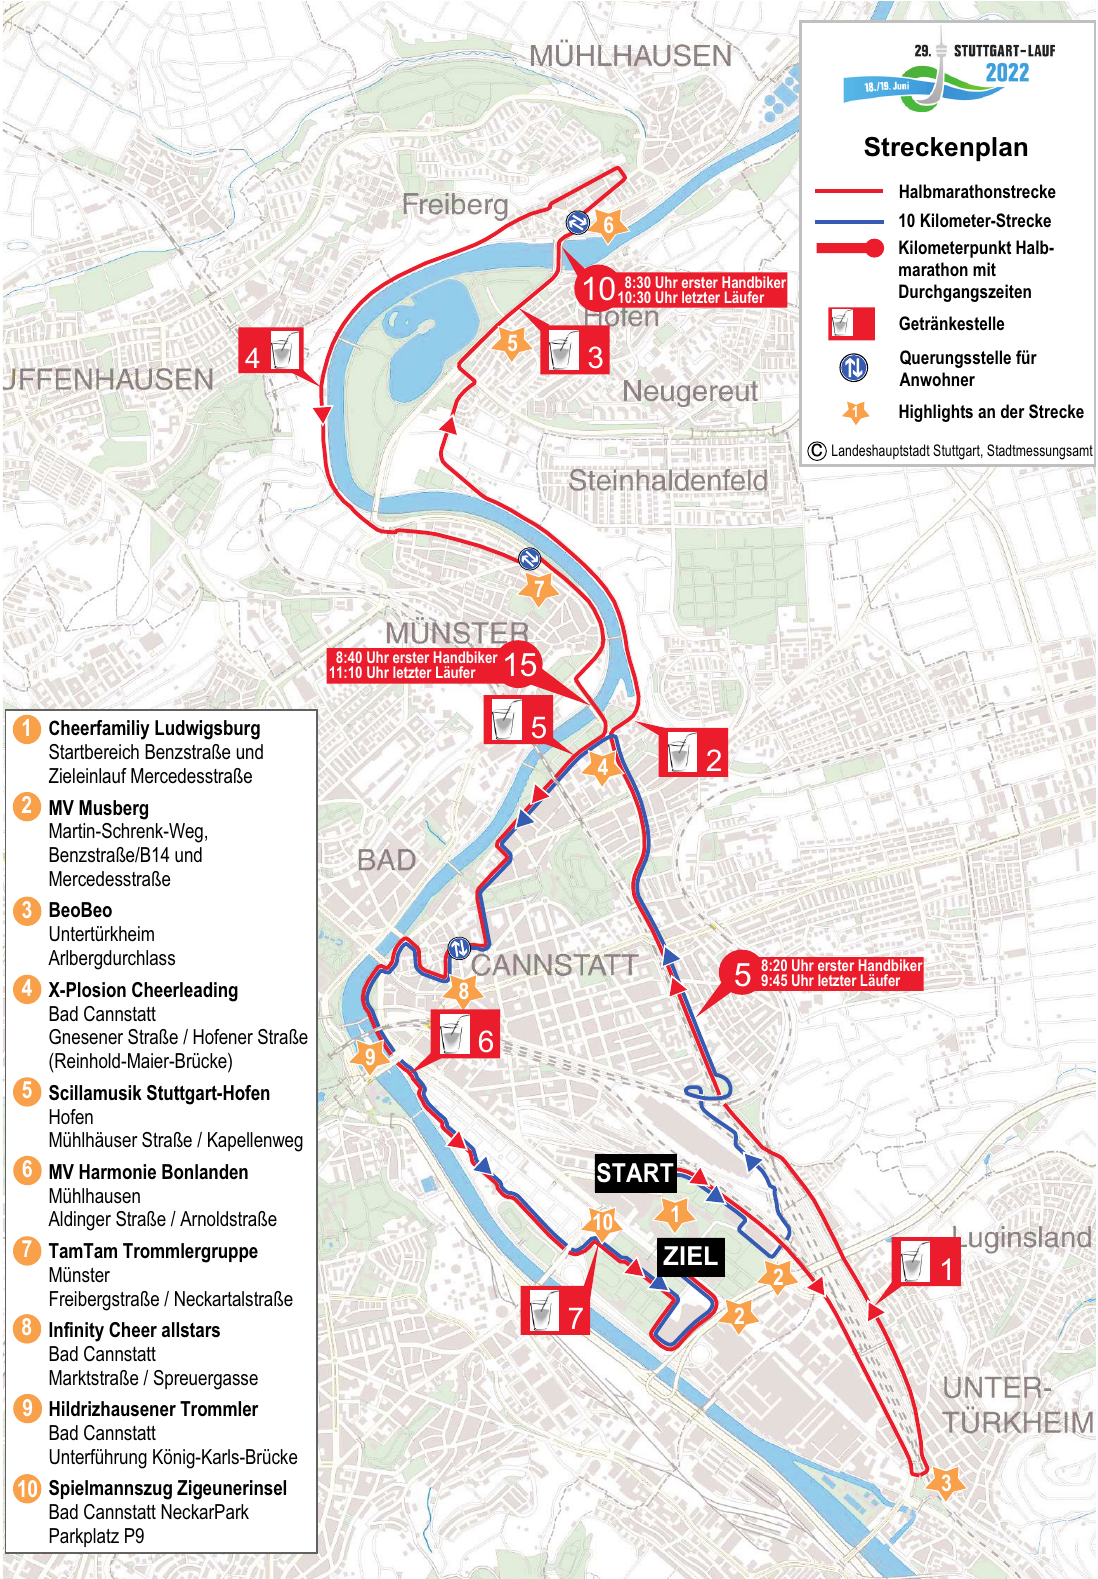 29. Stuttgart-Lauf: Anwohnerinformation-2